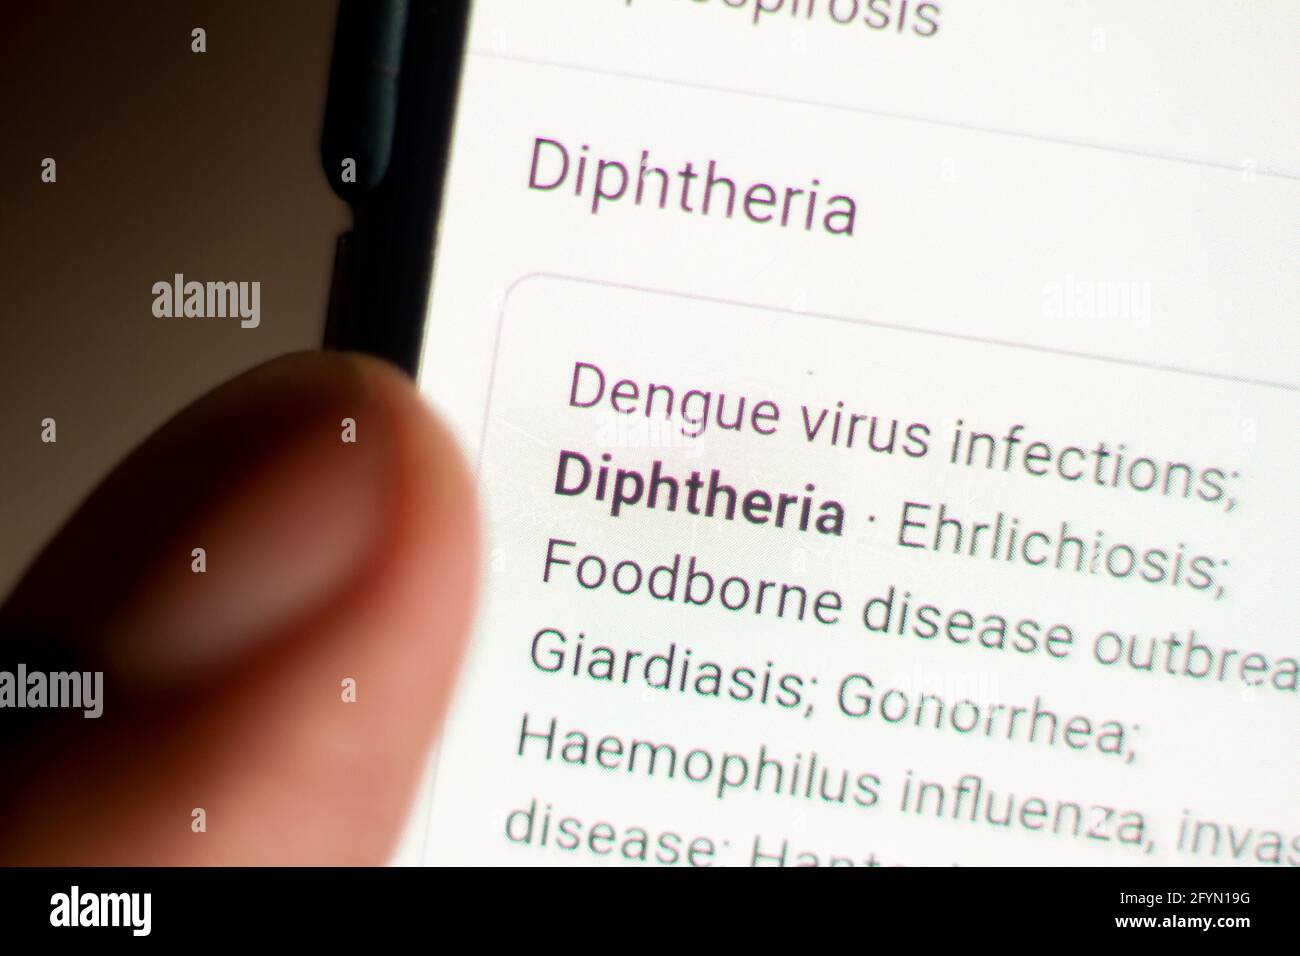 Diphtheria News auf dem Handy.Handy in den Händen. Selektiver Fokus und chromatische Aberration Effekte. Stockfoto